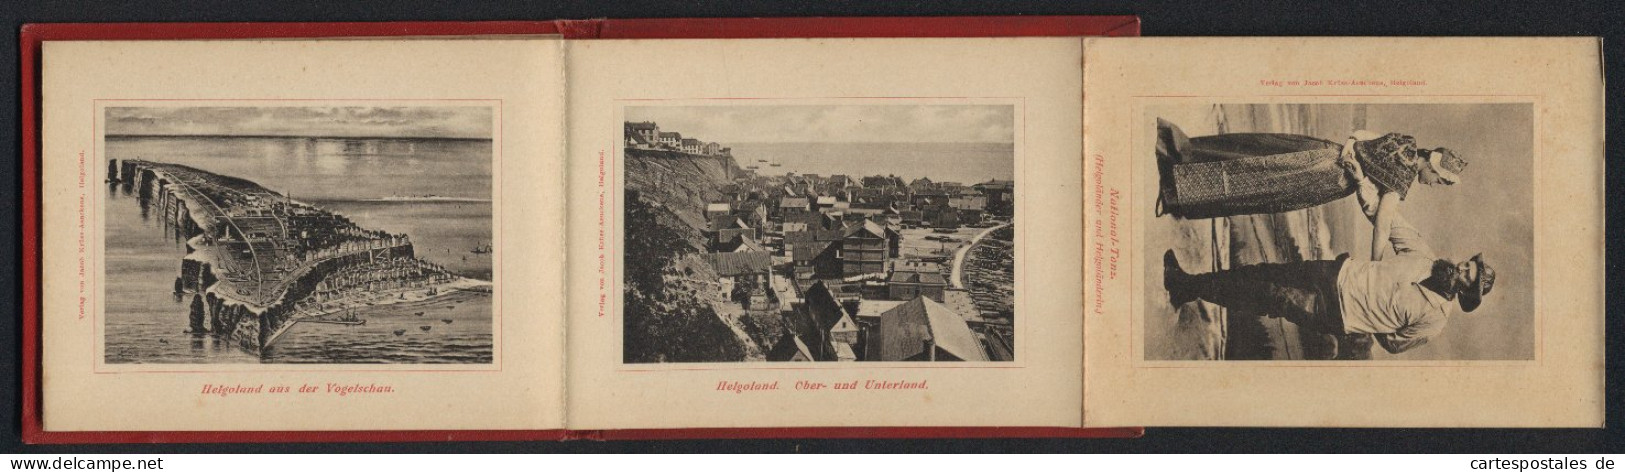 Leporello-Album Helgoland Mit 12 Lichdruck-Ansichten, Helgoländer In Tracht, Ober- Und Unterland, Fahrstuhl, Mönch  - Litografía